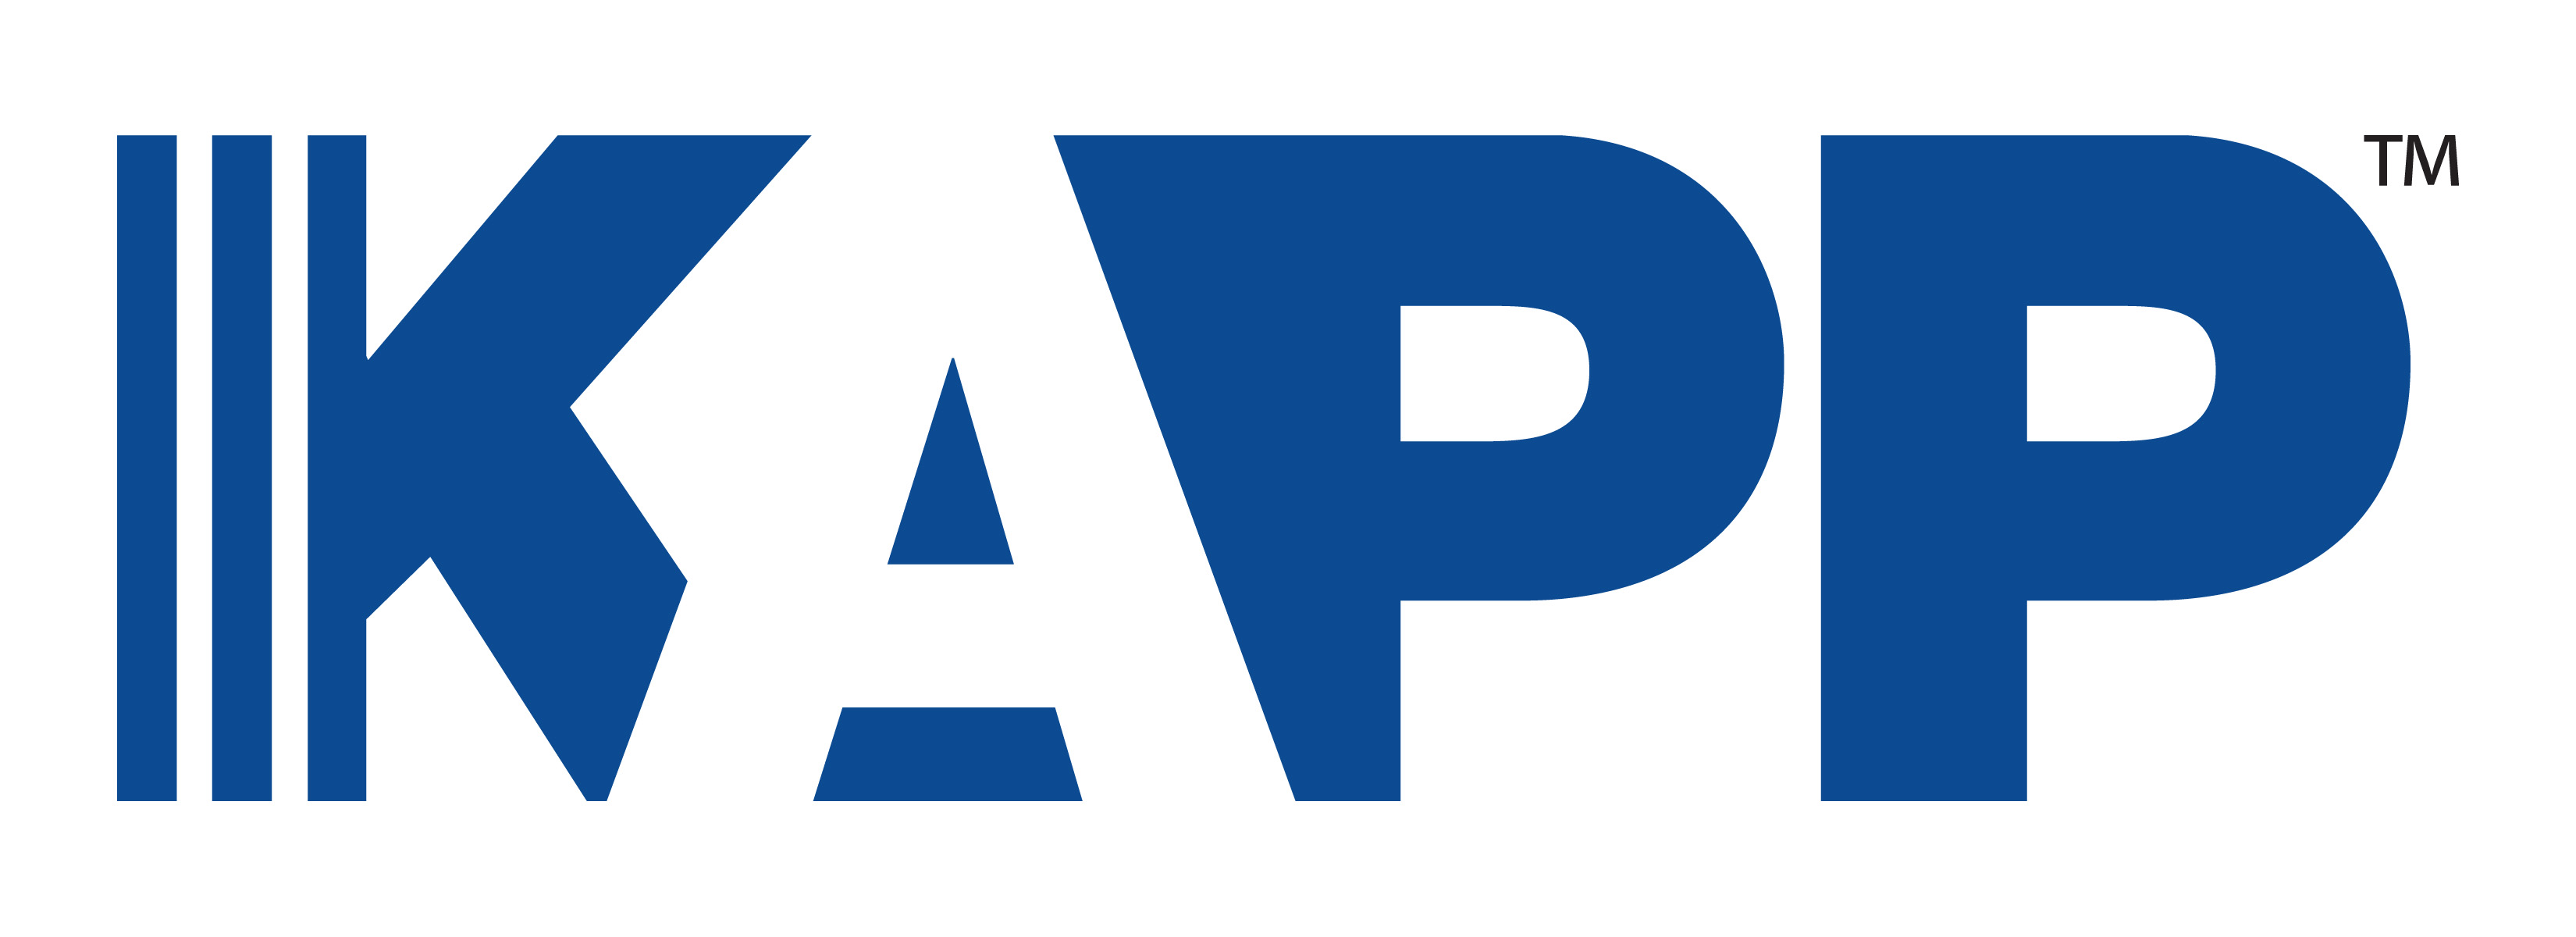 KAPP Infrastructure